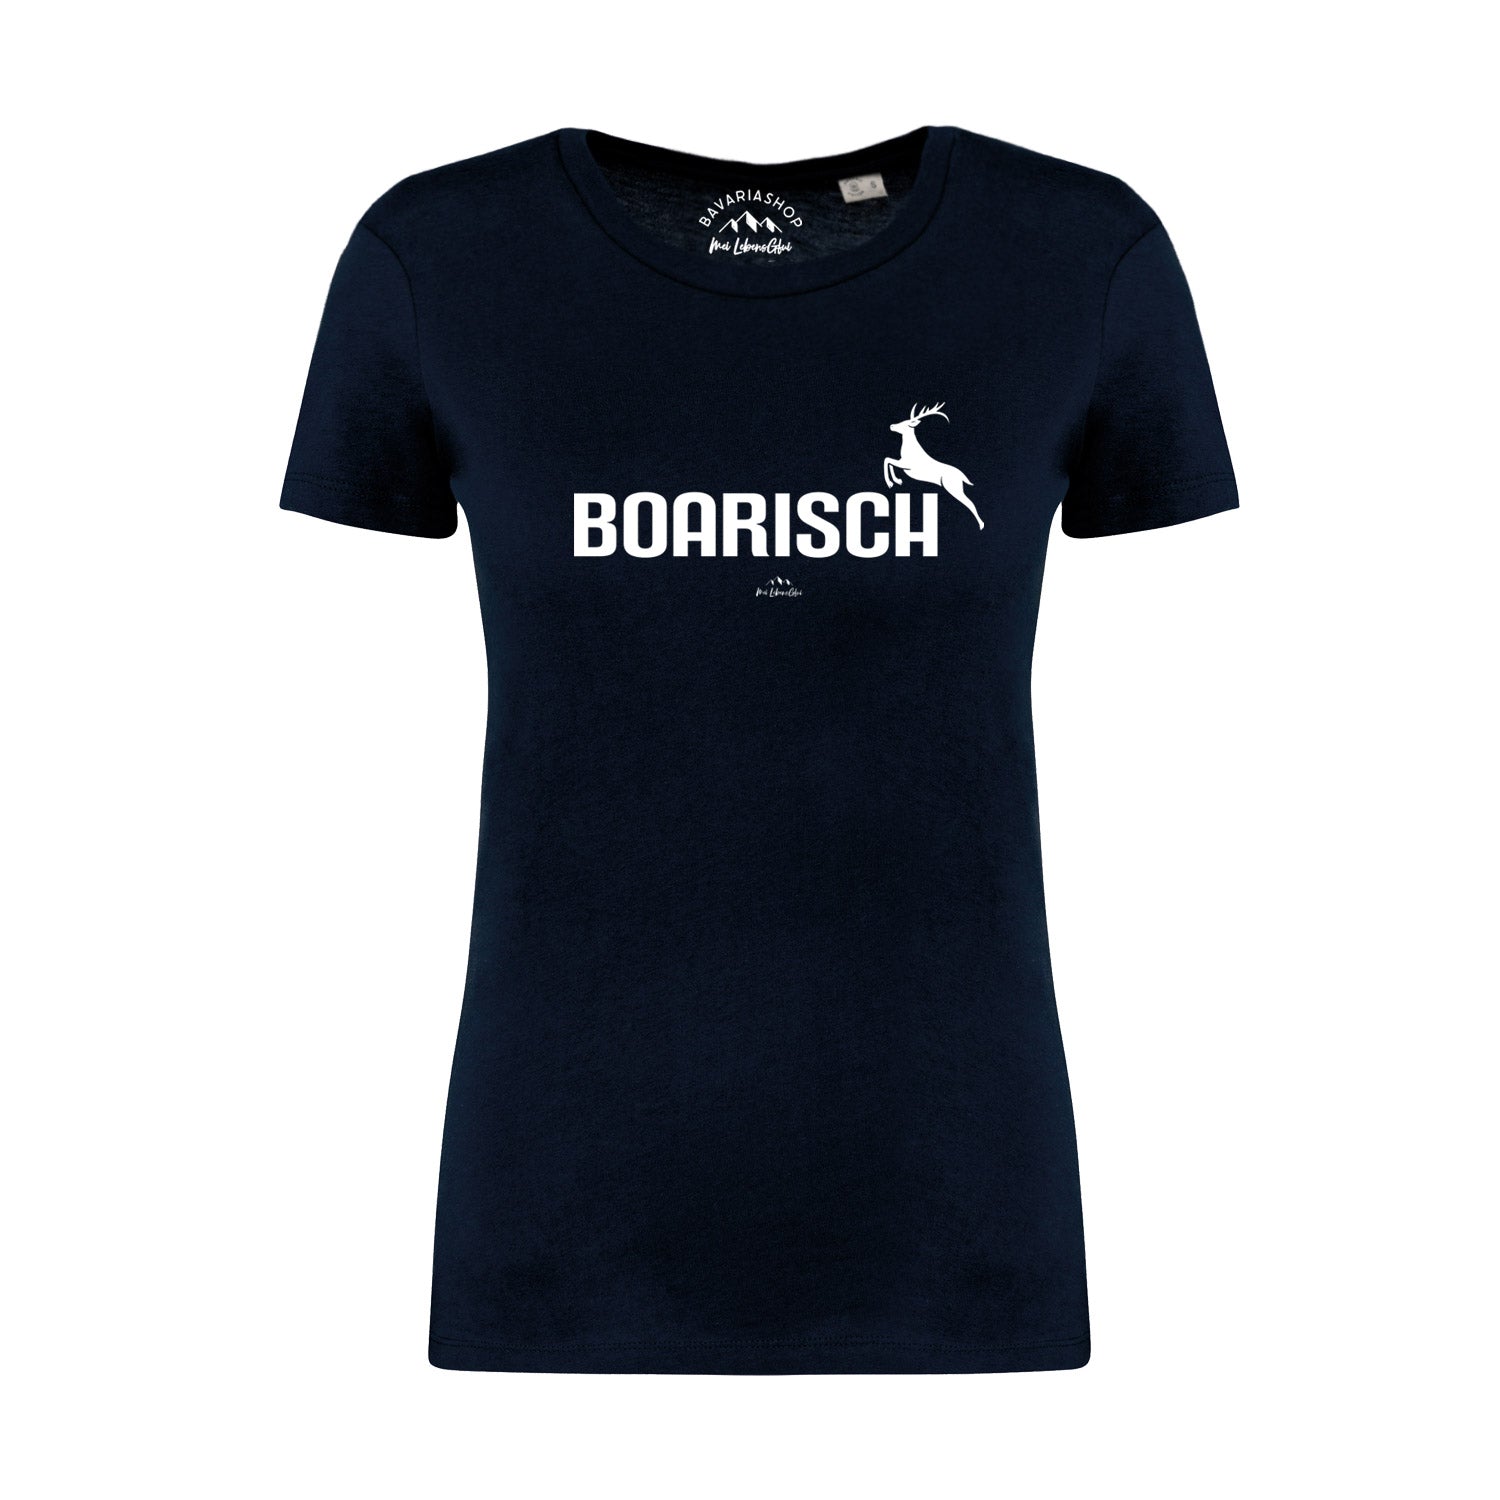 Damen T-Shirt "Boarisch"